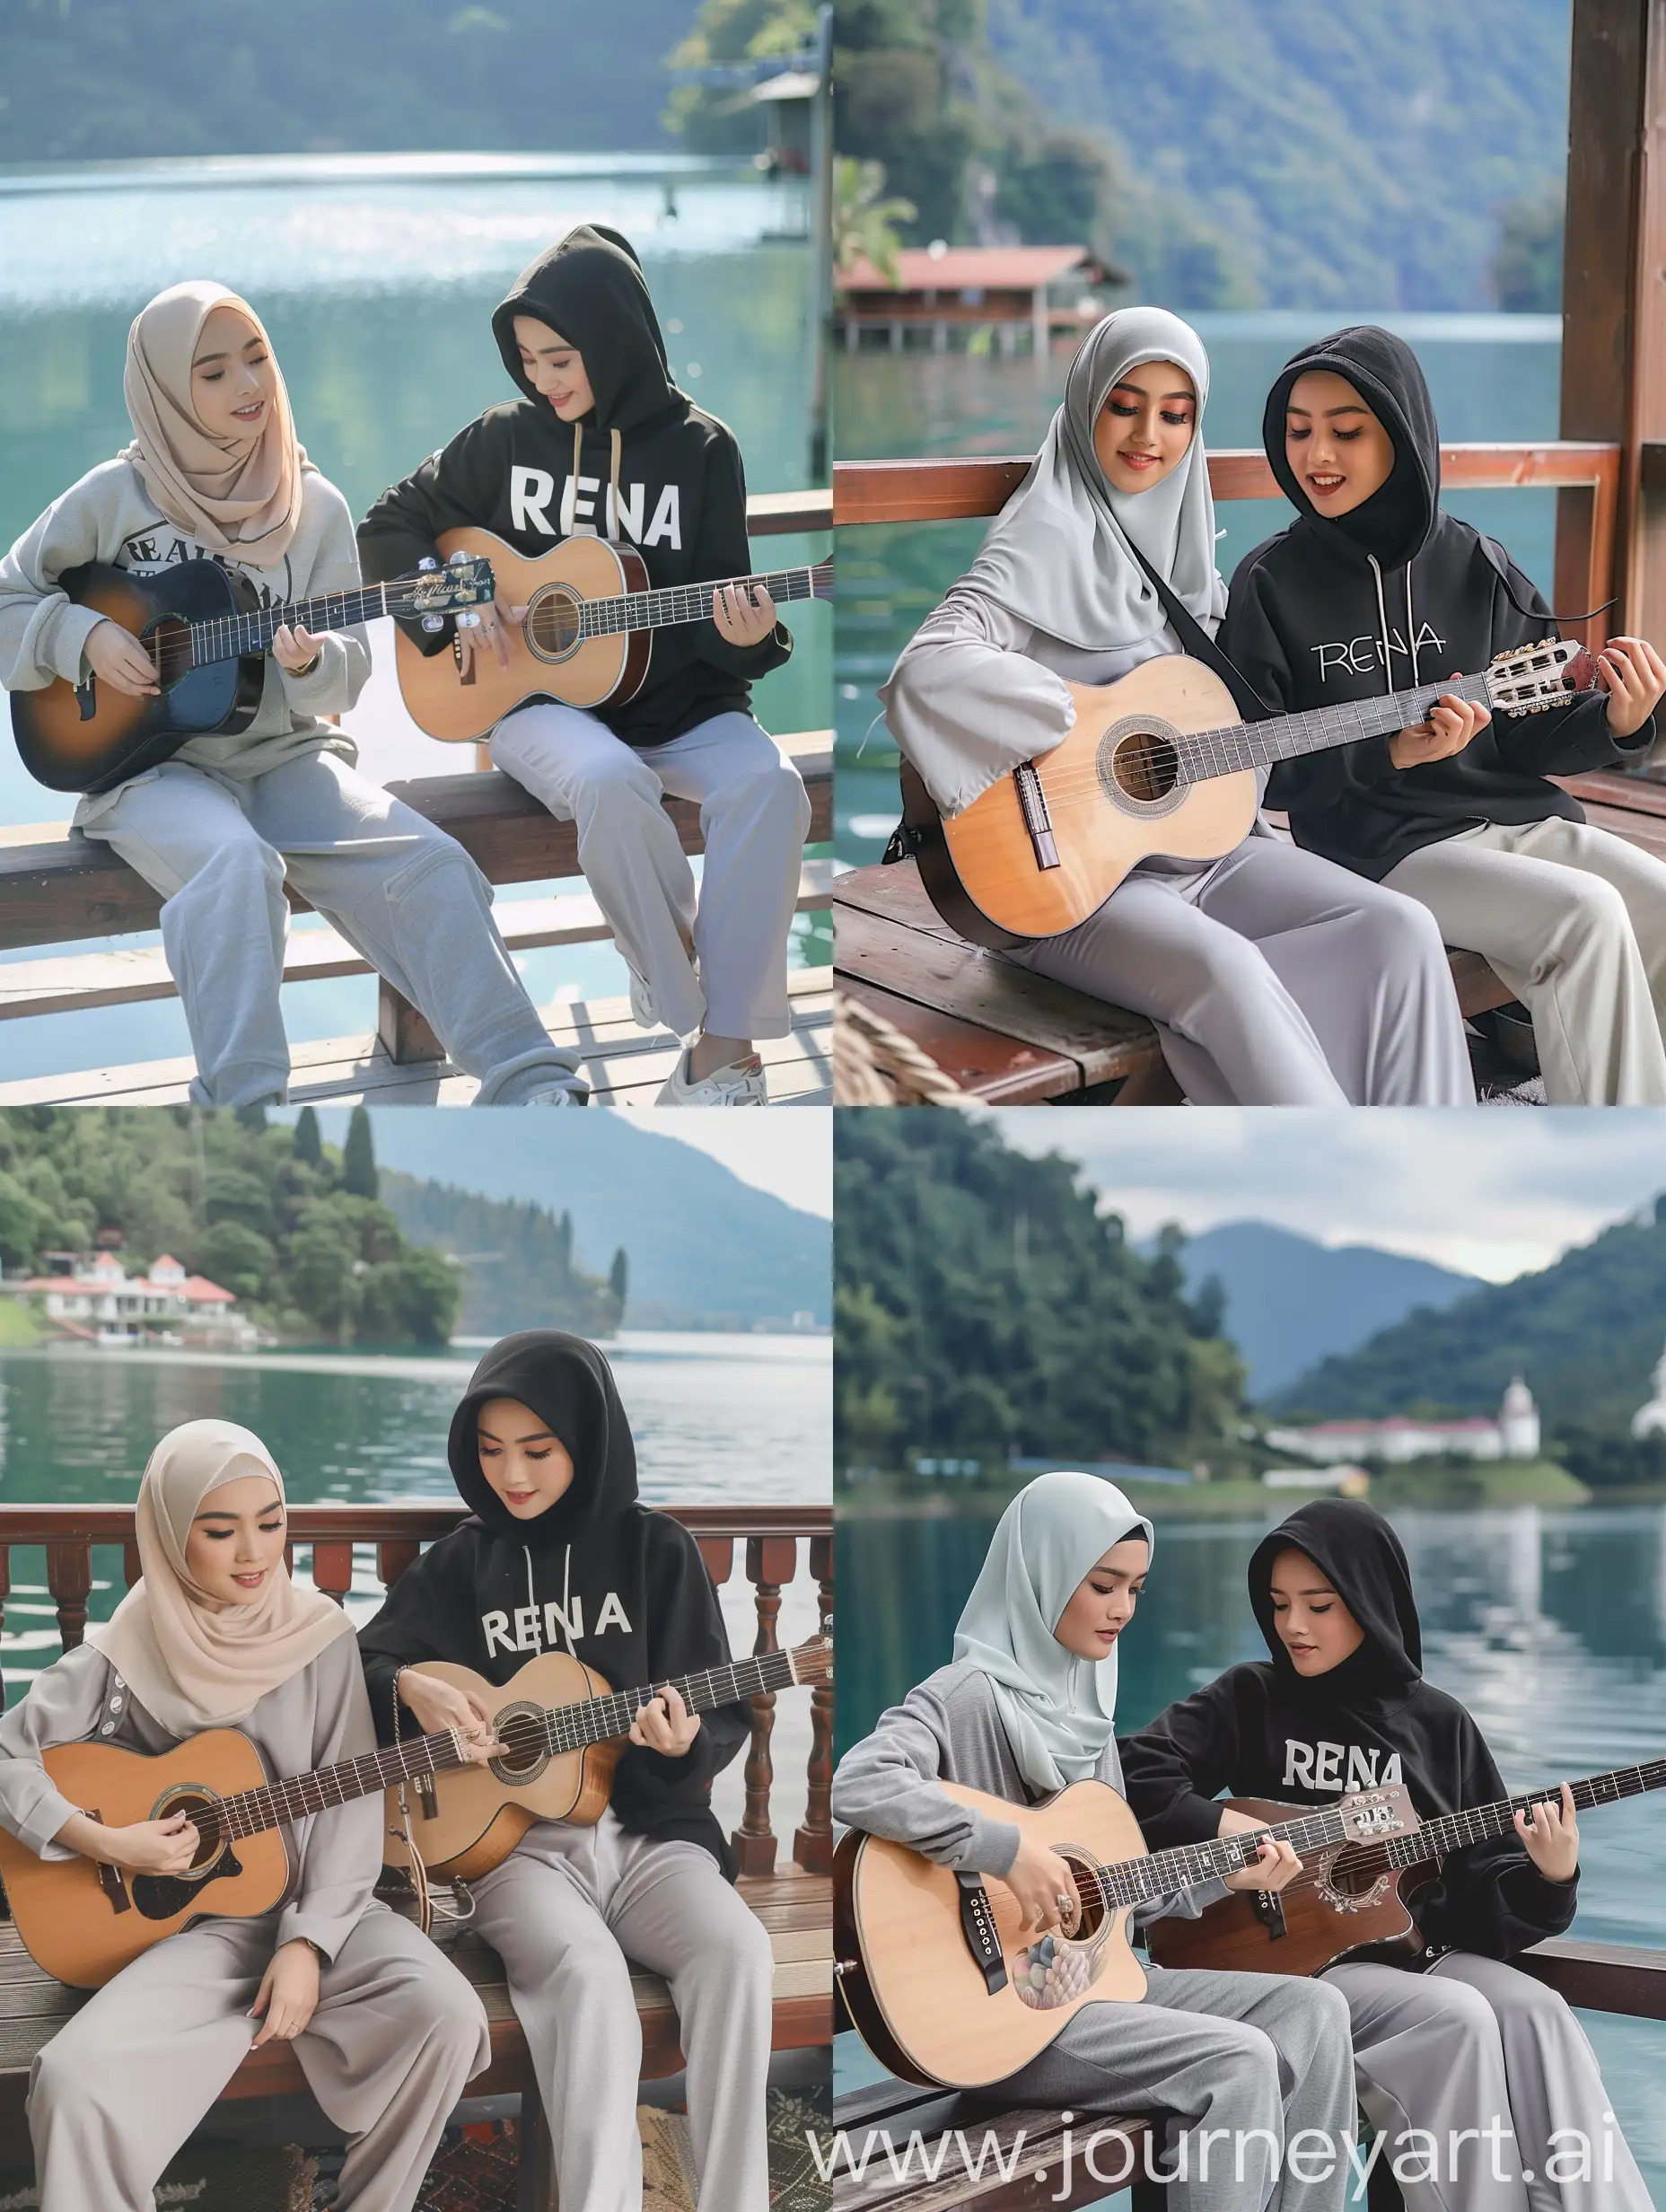 Foto asli dan autentik dua wanita hijab cantik thailand berusia 20 tahun, celana panjang abu abu muda, dan seorang wanita hijab cantik thailand mengenakan hoodie hitam bertuliskan (RENA), celana panjang abu-abu muda, duduk di teras rumah di tepi danau indah sambil bermain gitar, kualitas foto HD 16k, jernih dan resolusi cerah